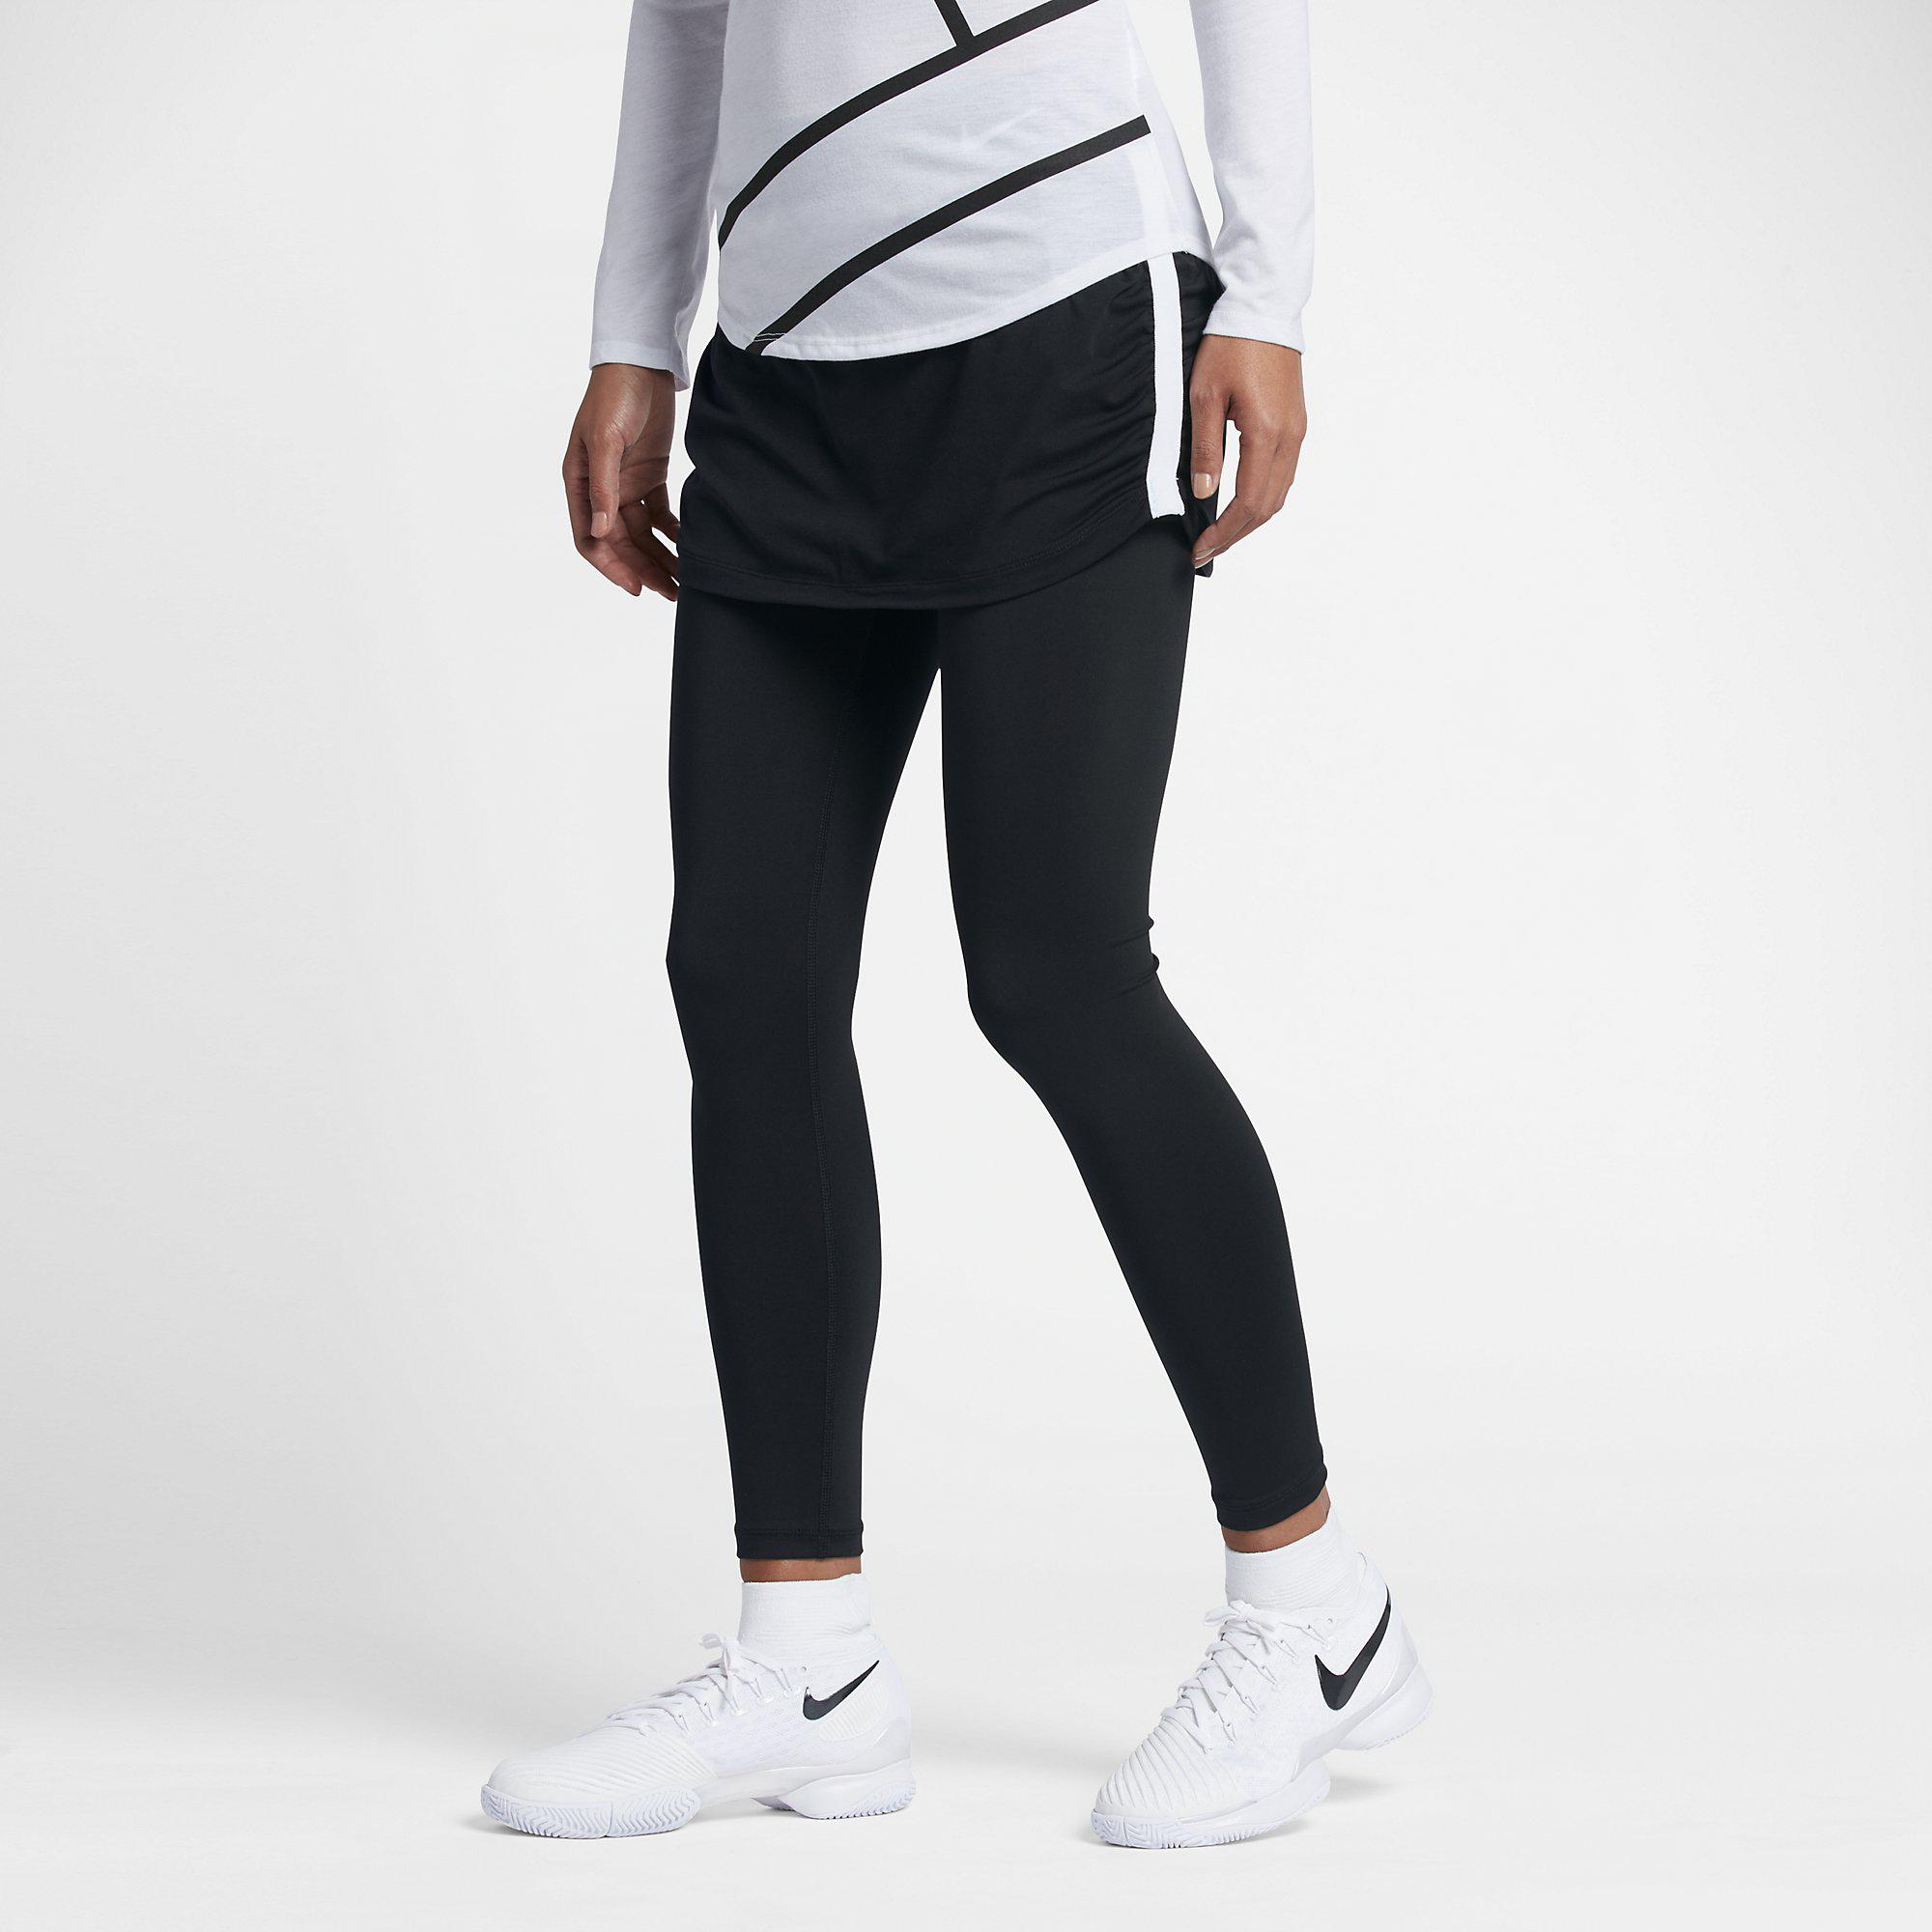 Nike Womens Pure Tennis Skapri - Black/White - Tennisnuts.com